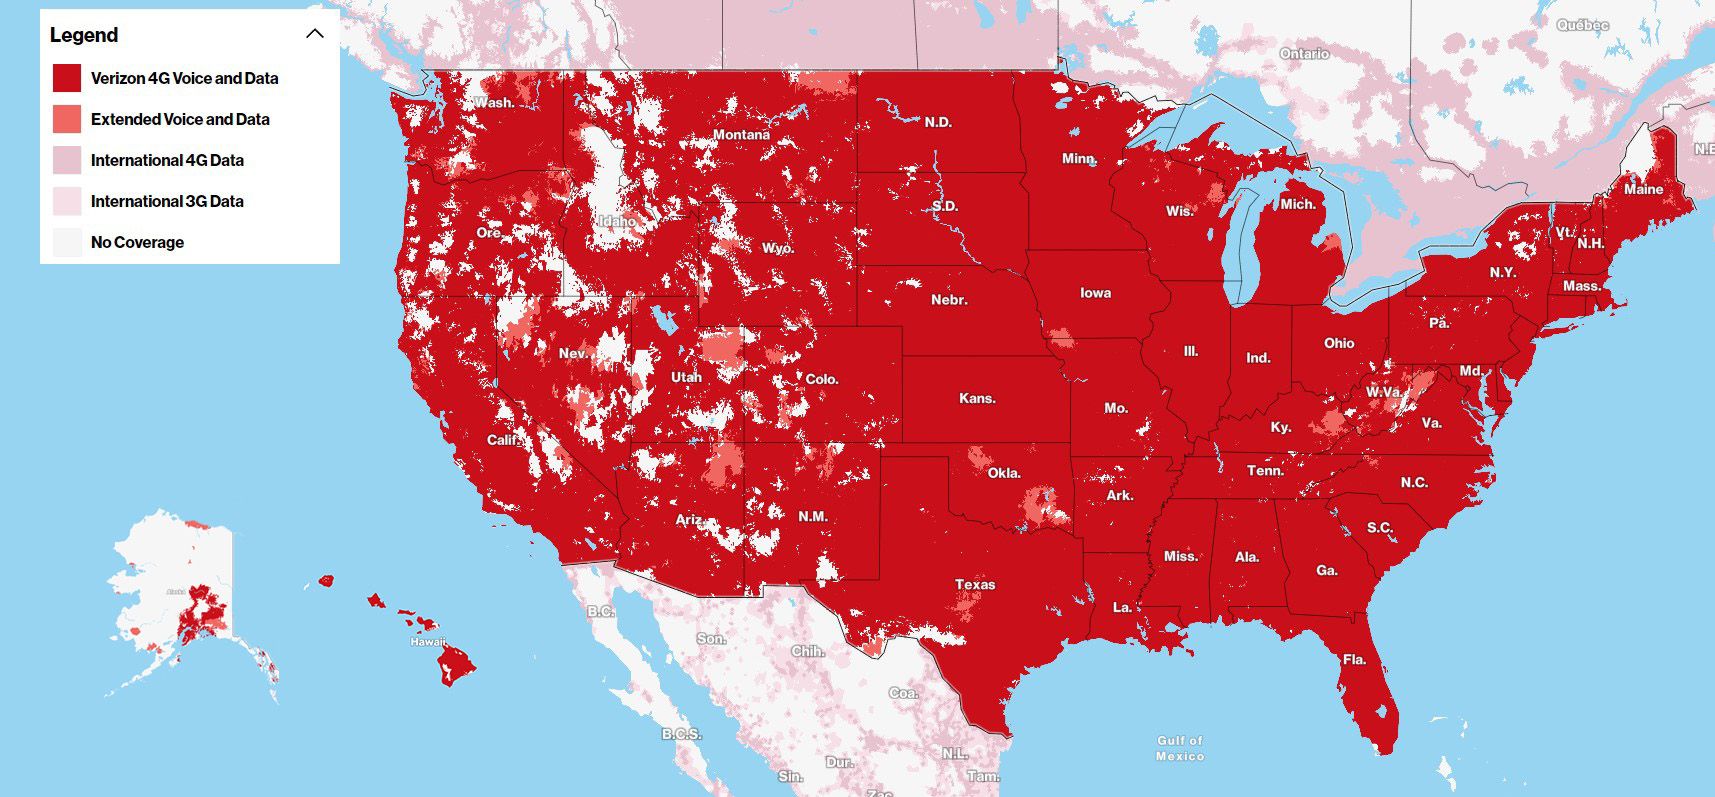 Um mapa de cobertura dos Estados Unidos mostrando a rede da Verizon com áreas de voz e dados 4G em vermelho, voz e dados estendidos em vermelho mais claro e dados 4G internacionais em rosa, junto com zonas sem cobertura.